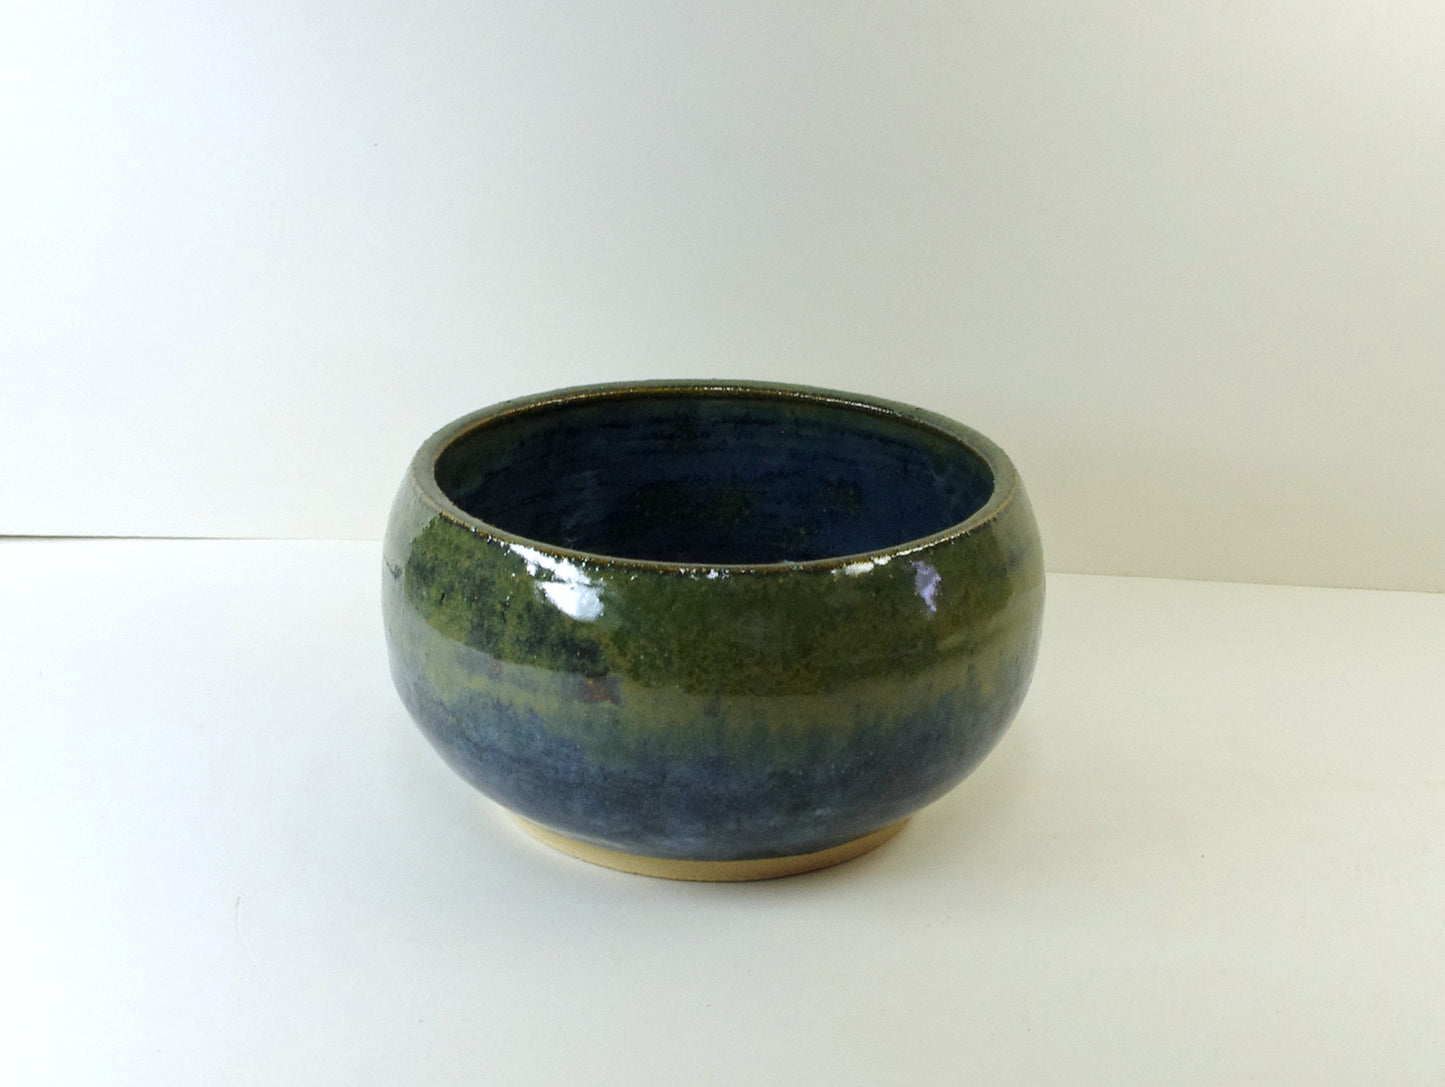 2117, Hand Thrown Stoneware Ikebana Vase, 6 x 3 1/4 inches